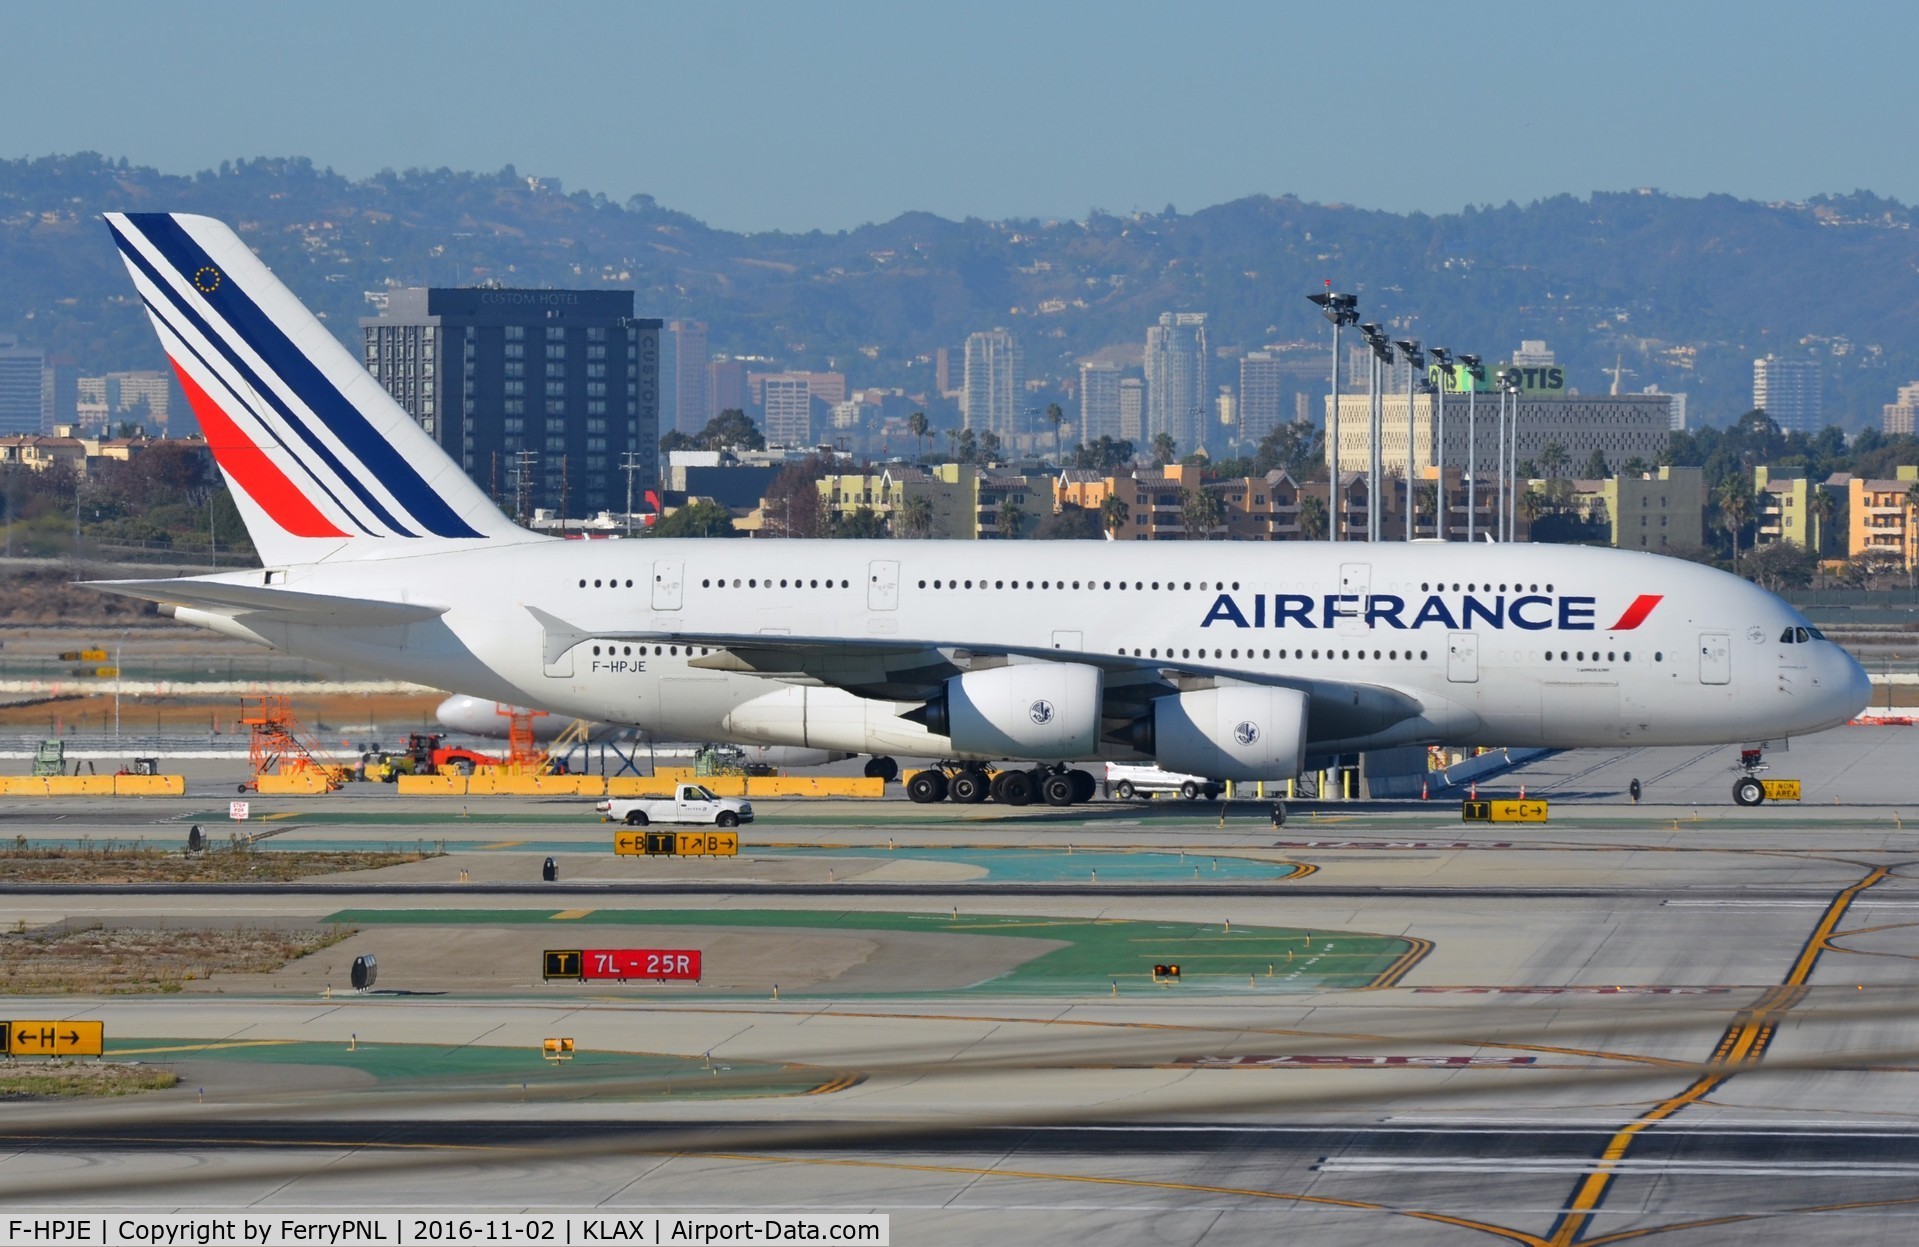 F-HPJE, 2010 Airbus A380-861 C/N 052, Air France A388